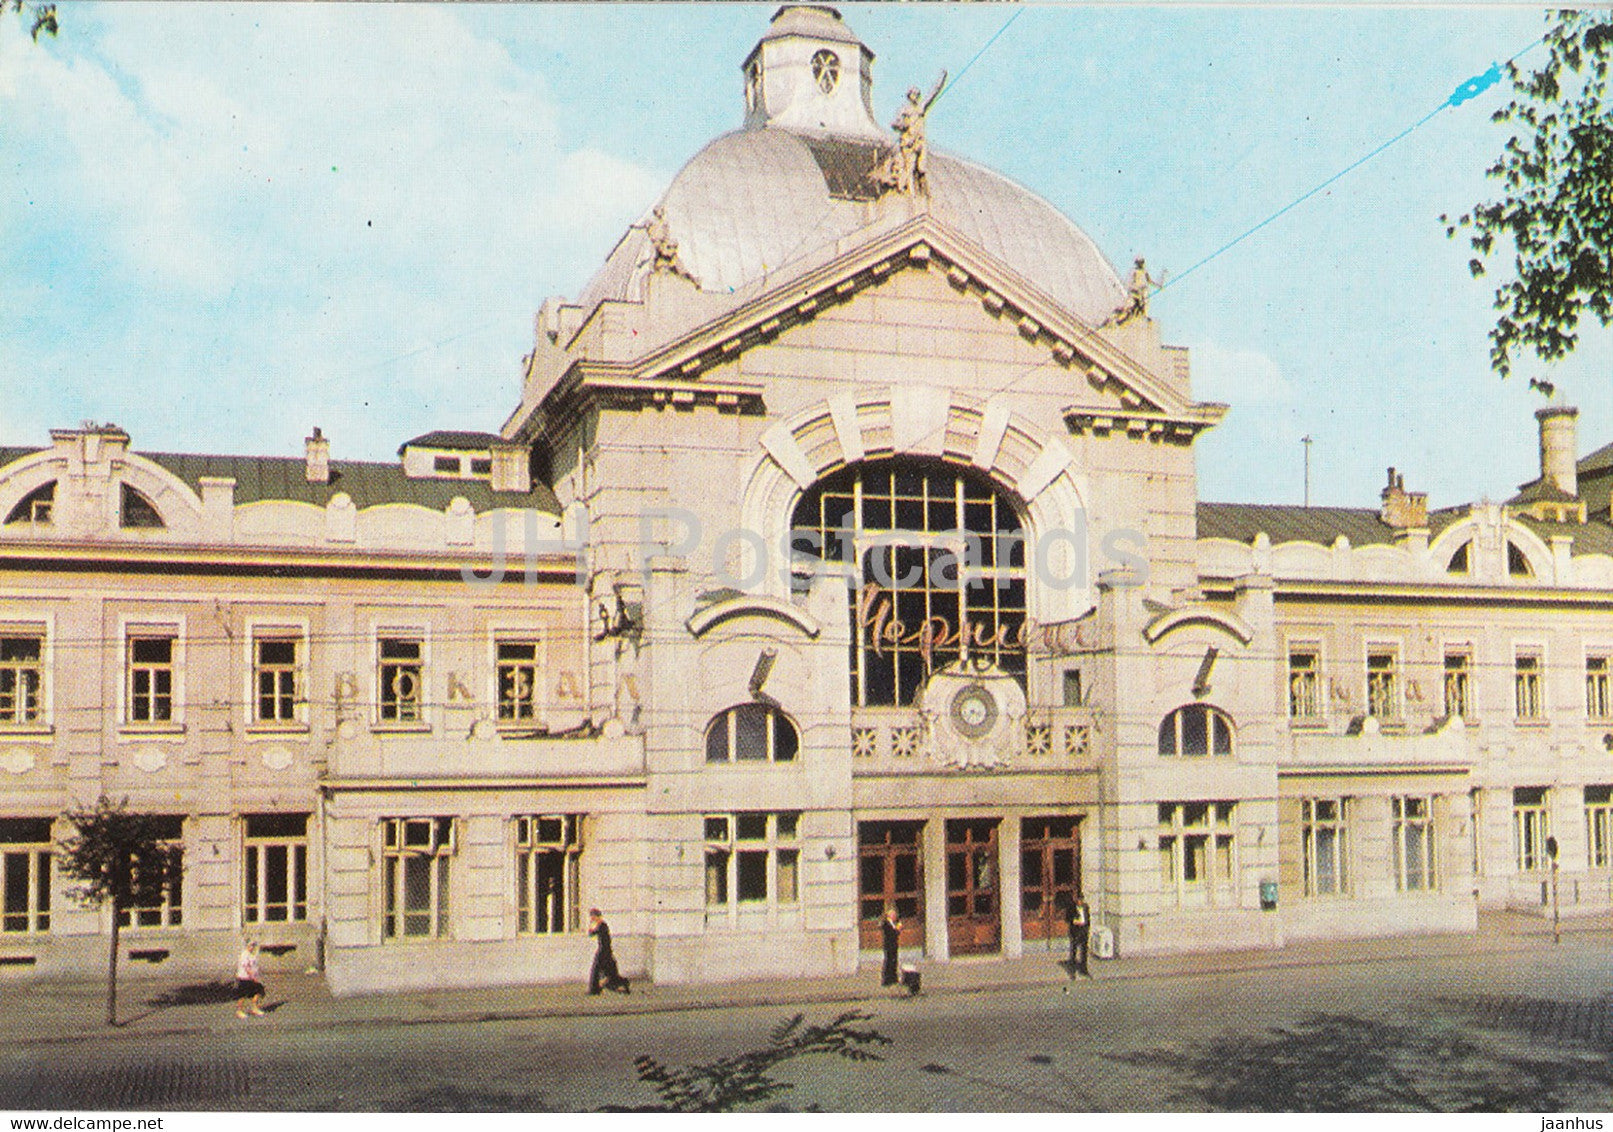 Chernivtsi - Railway station - 1973 - Ukraine USSR - unused - JH Postcards